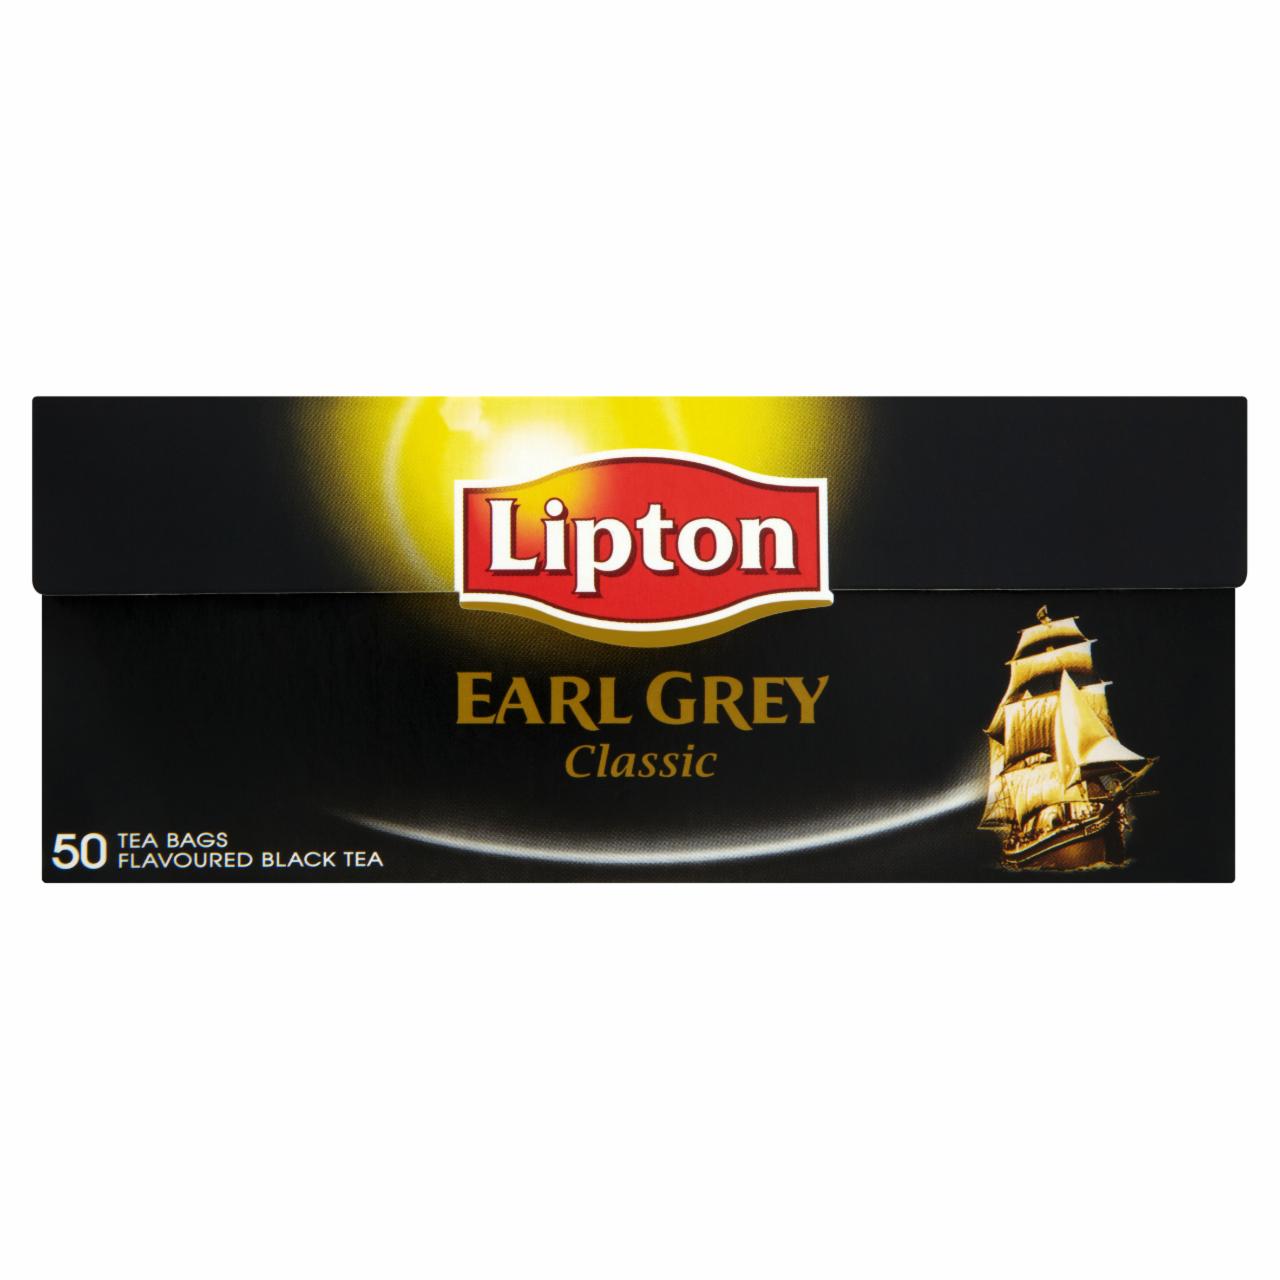 Képek - Lipton Earl Grey Classic bergamott ízesítésű fekete tea 50 filter 75 g